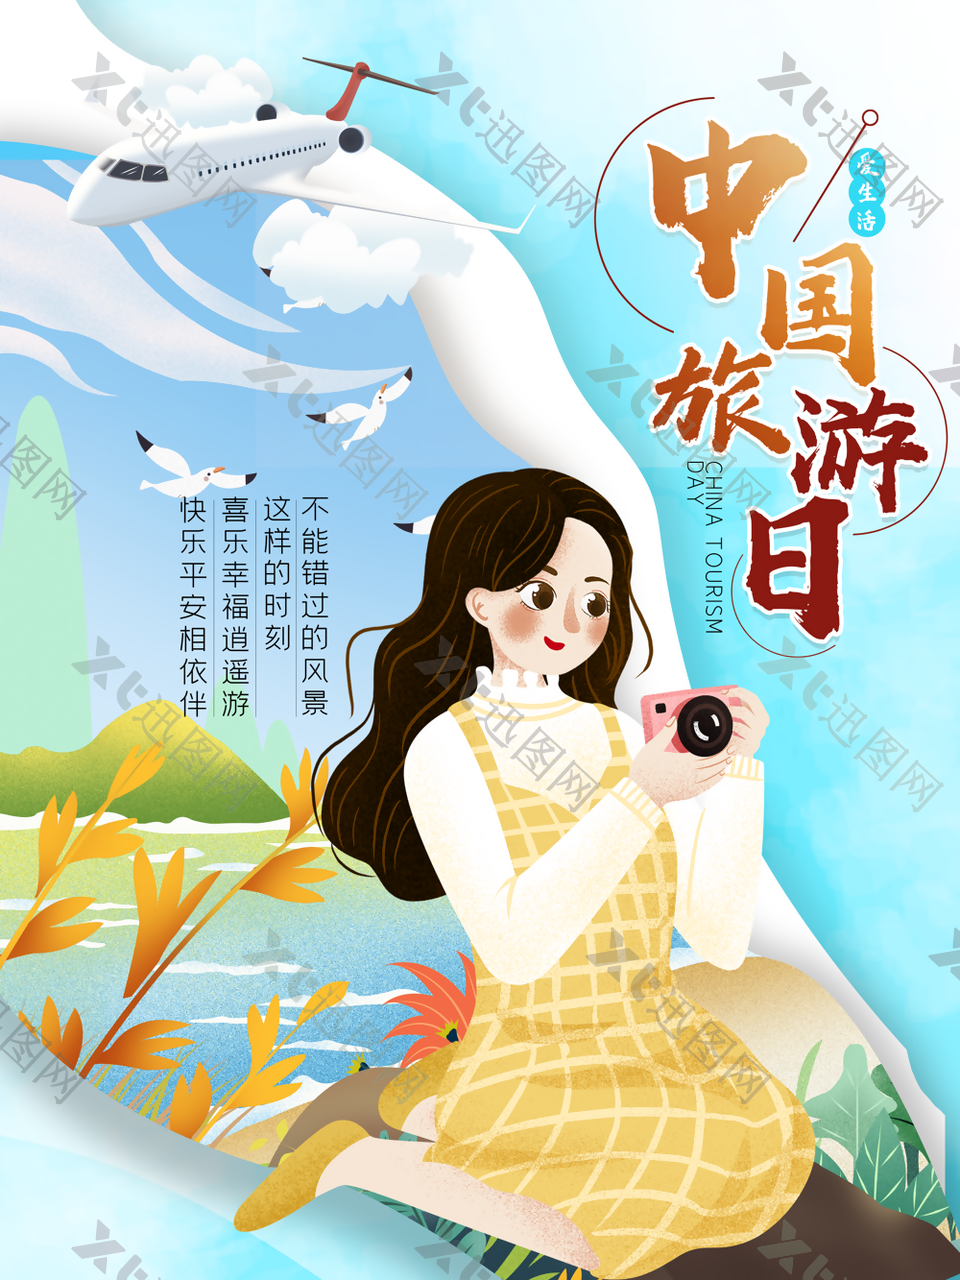 2022年中国旅游日海报设计